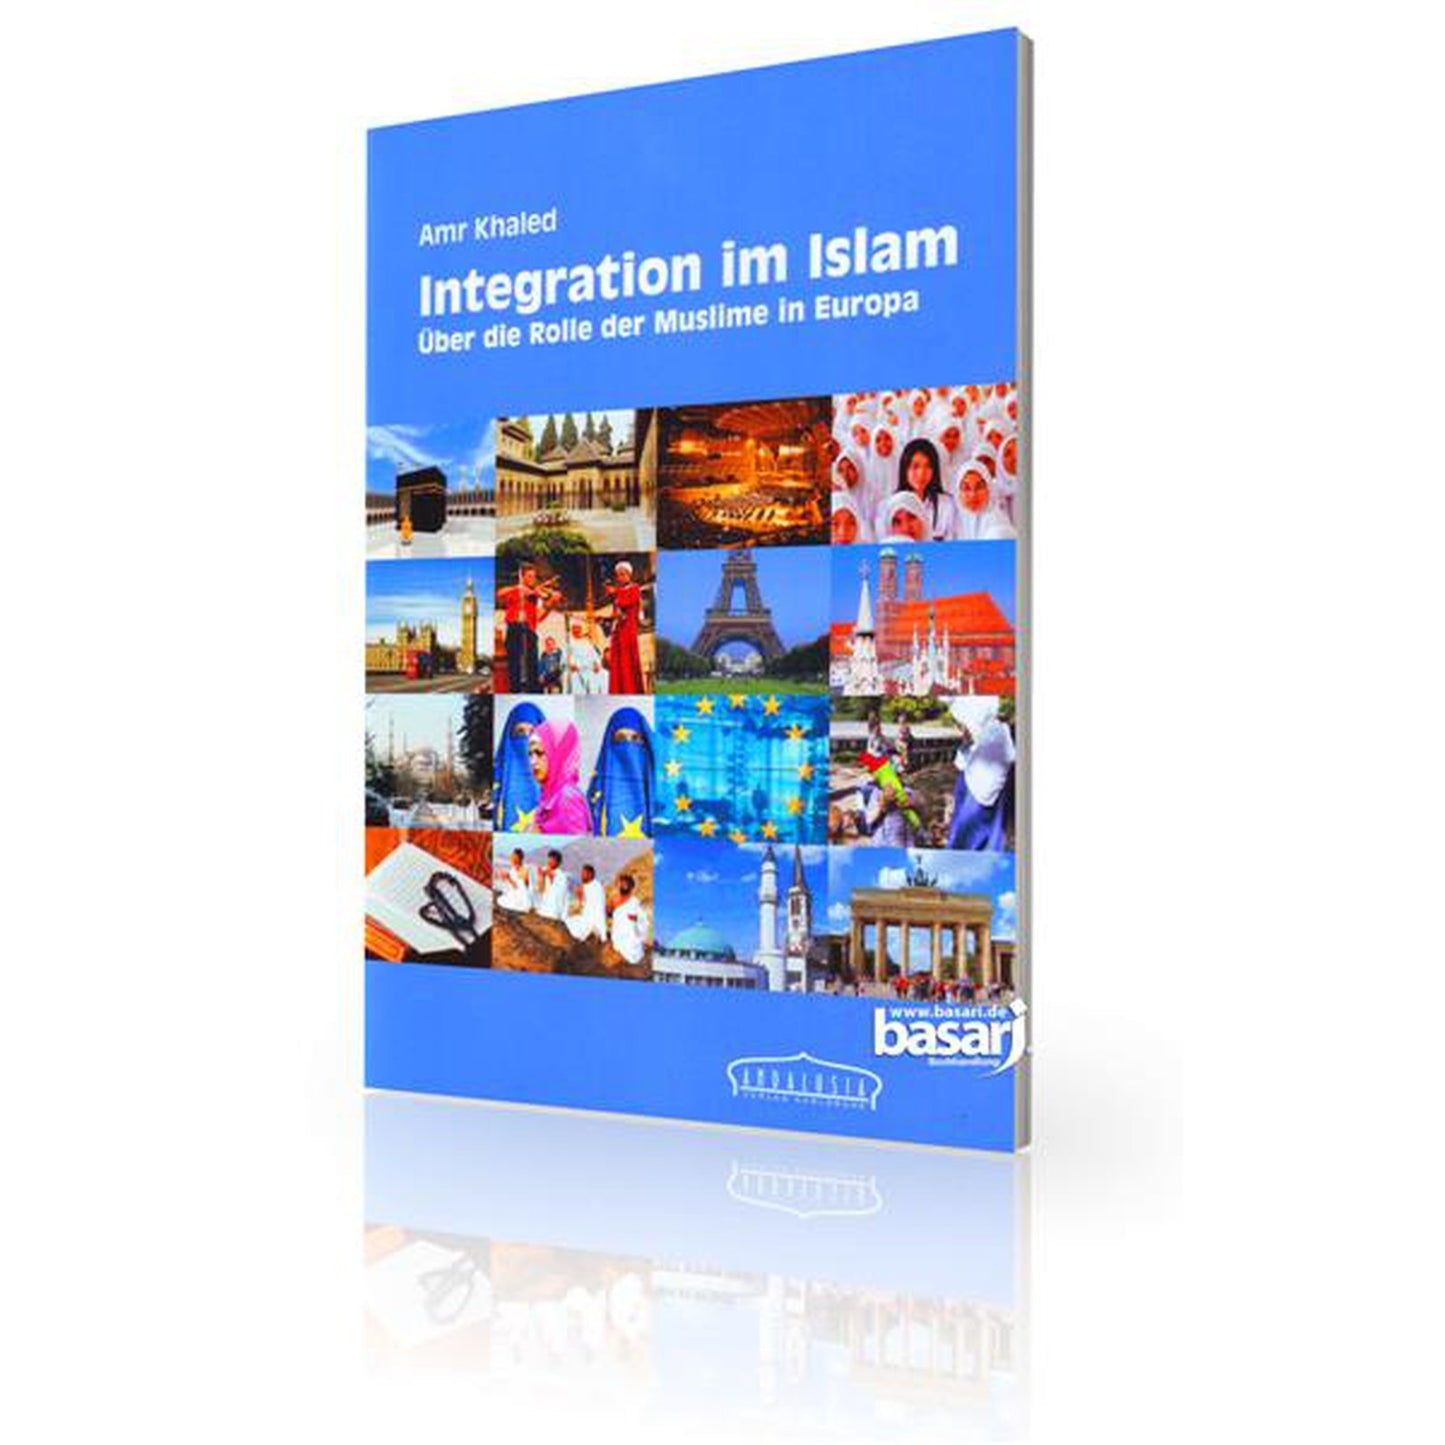 Integration im Islam - über die Rolle der Muslime in Europa